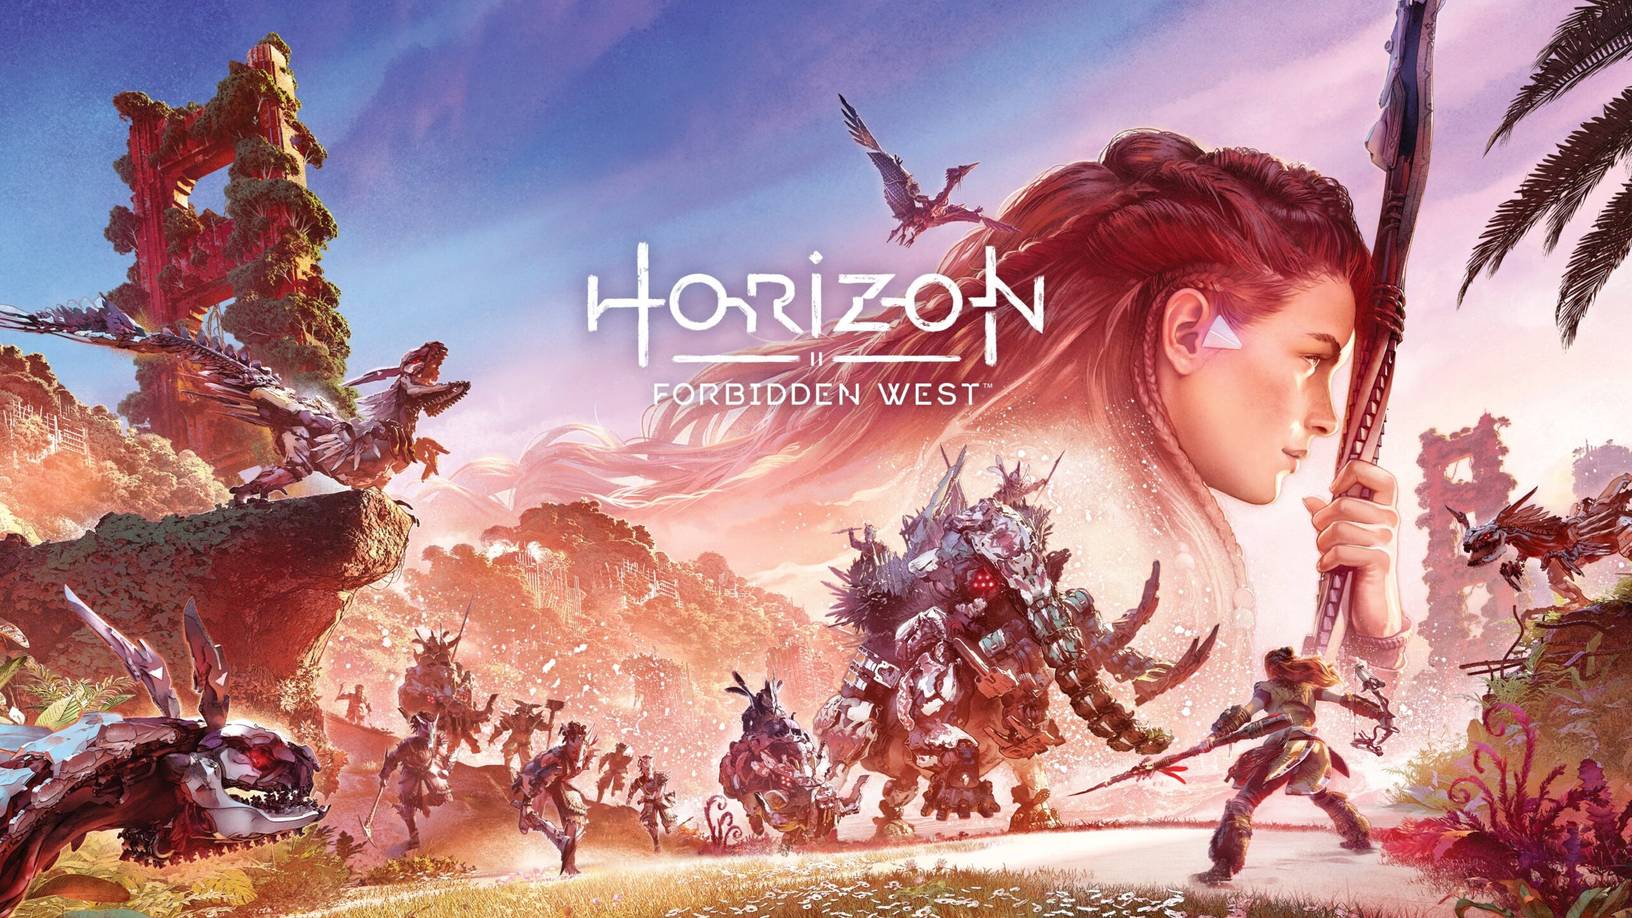 بررسی بازی Horizon Forbidden West